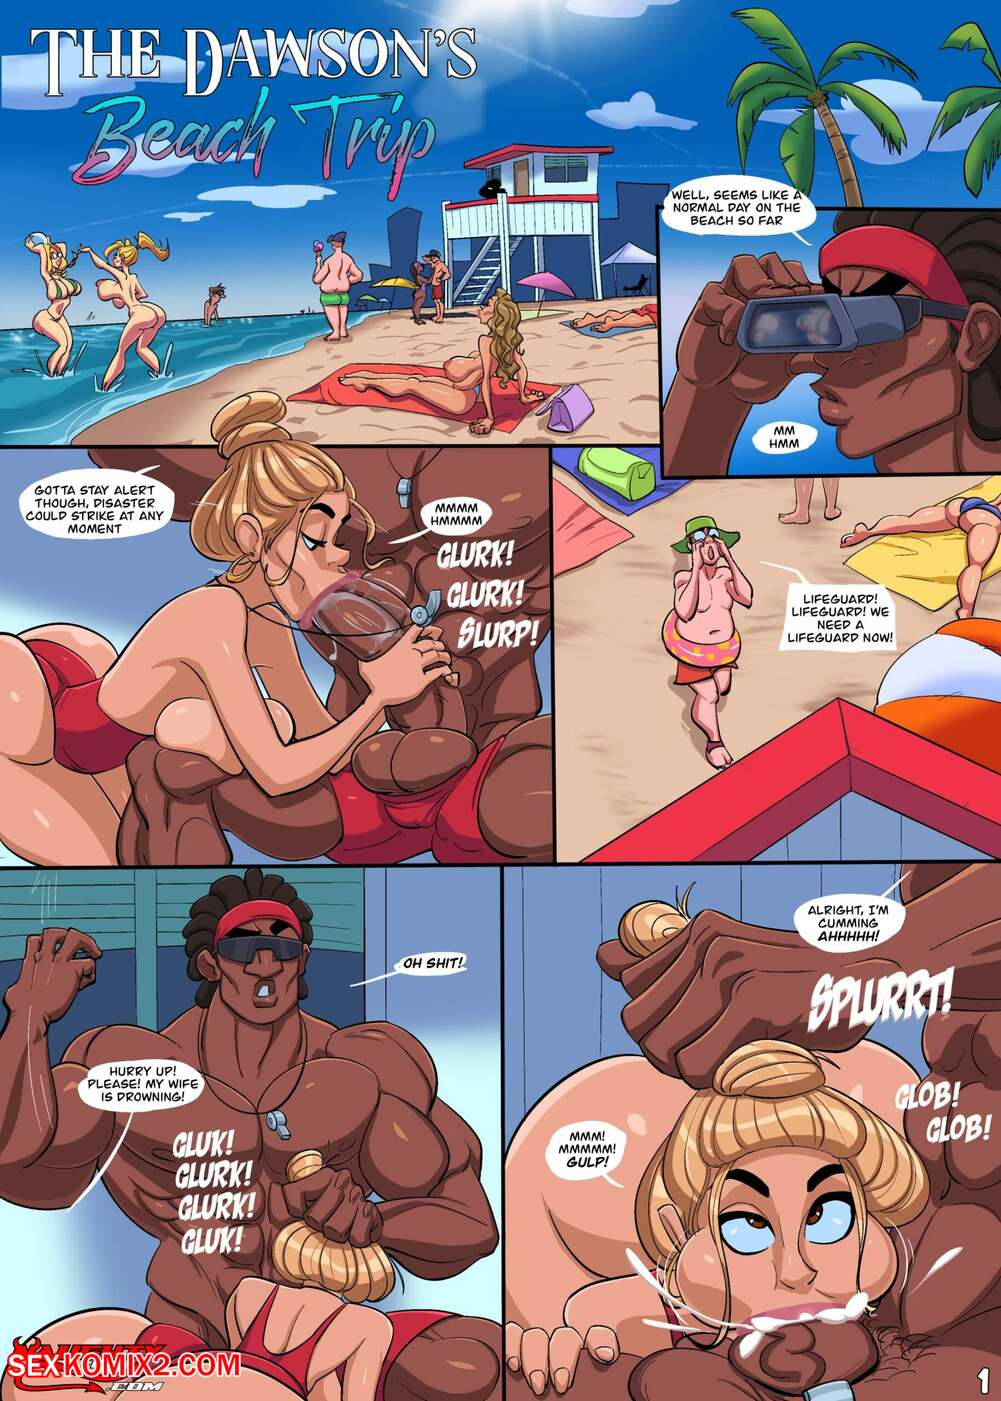 Beachy porn comics